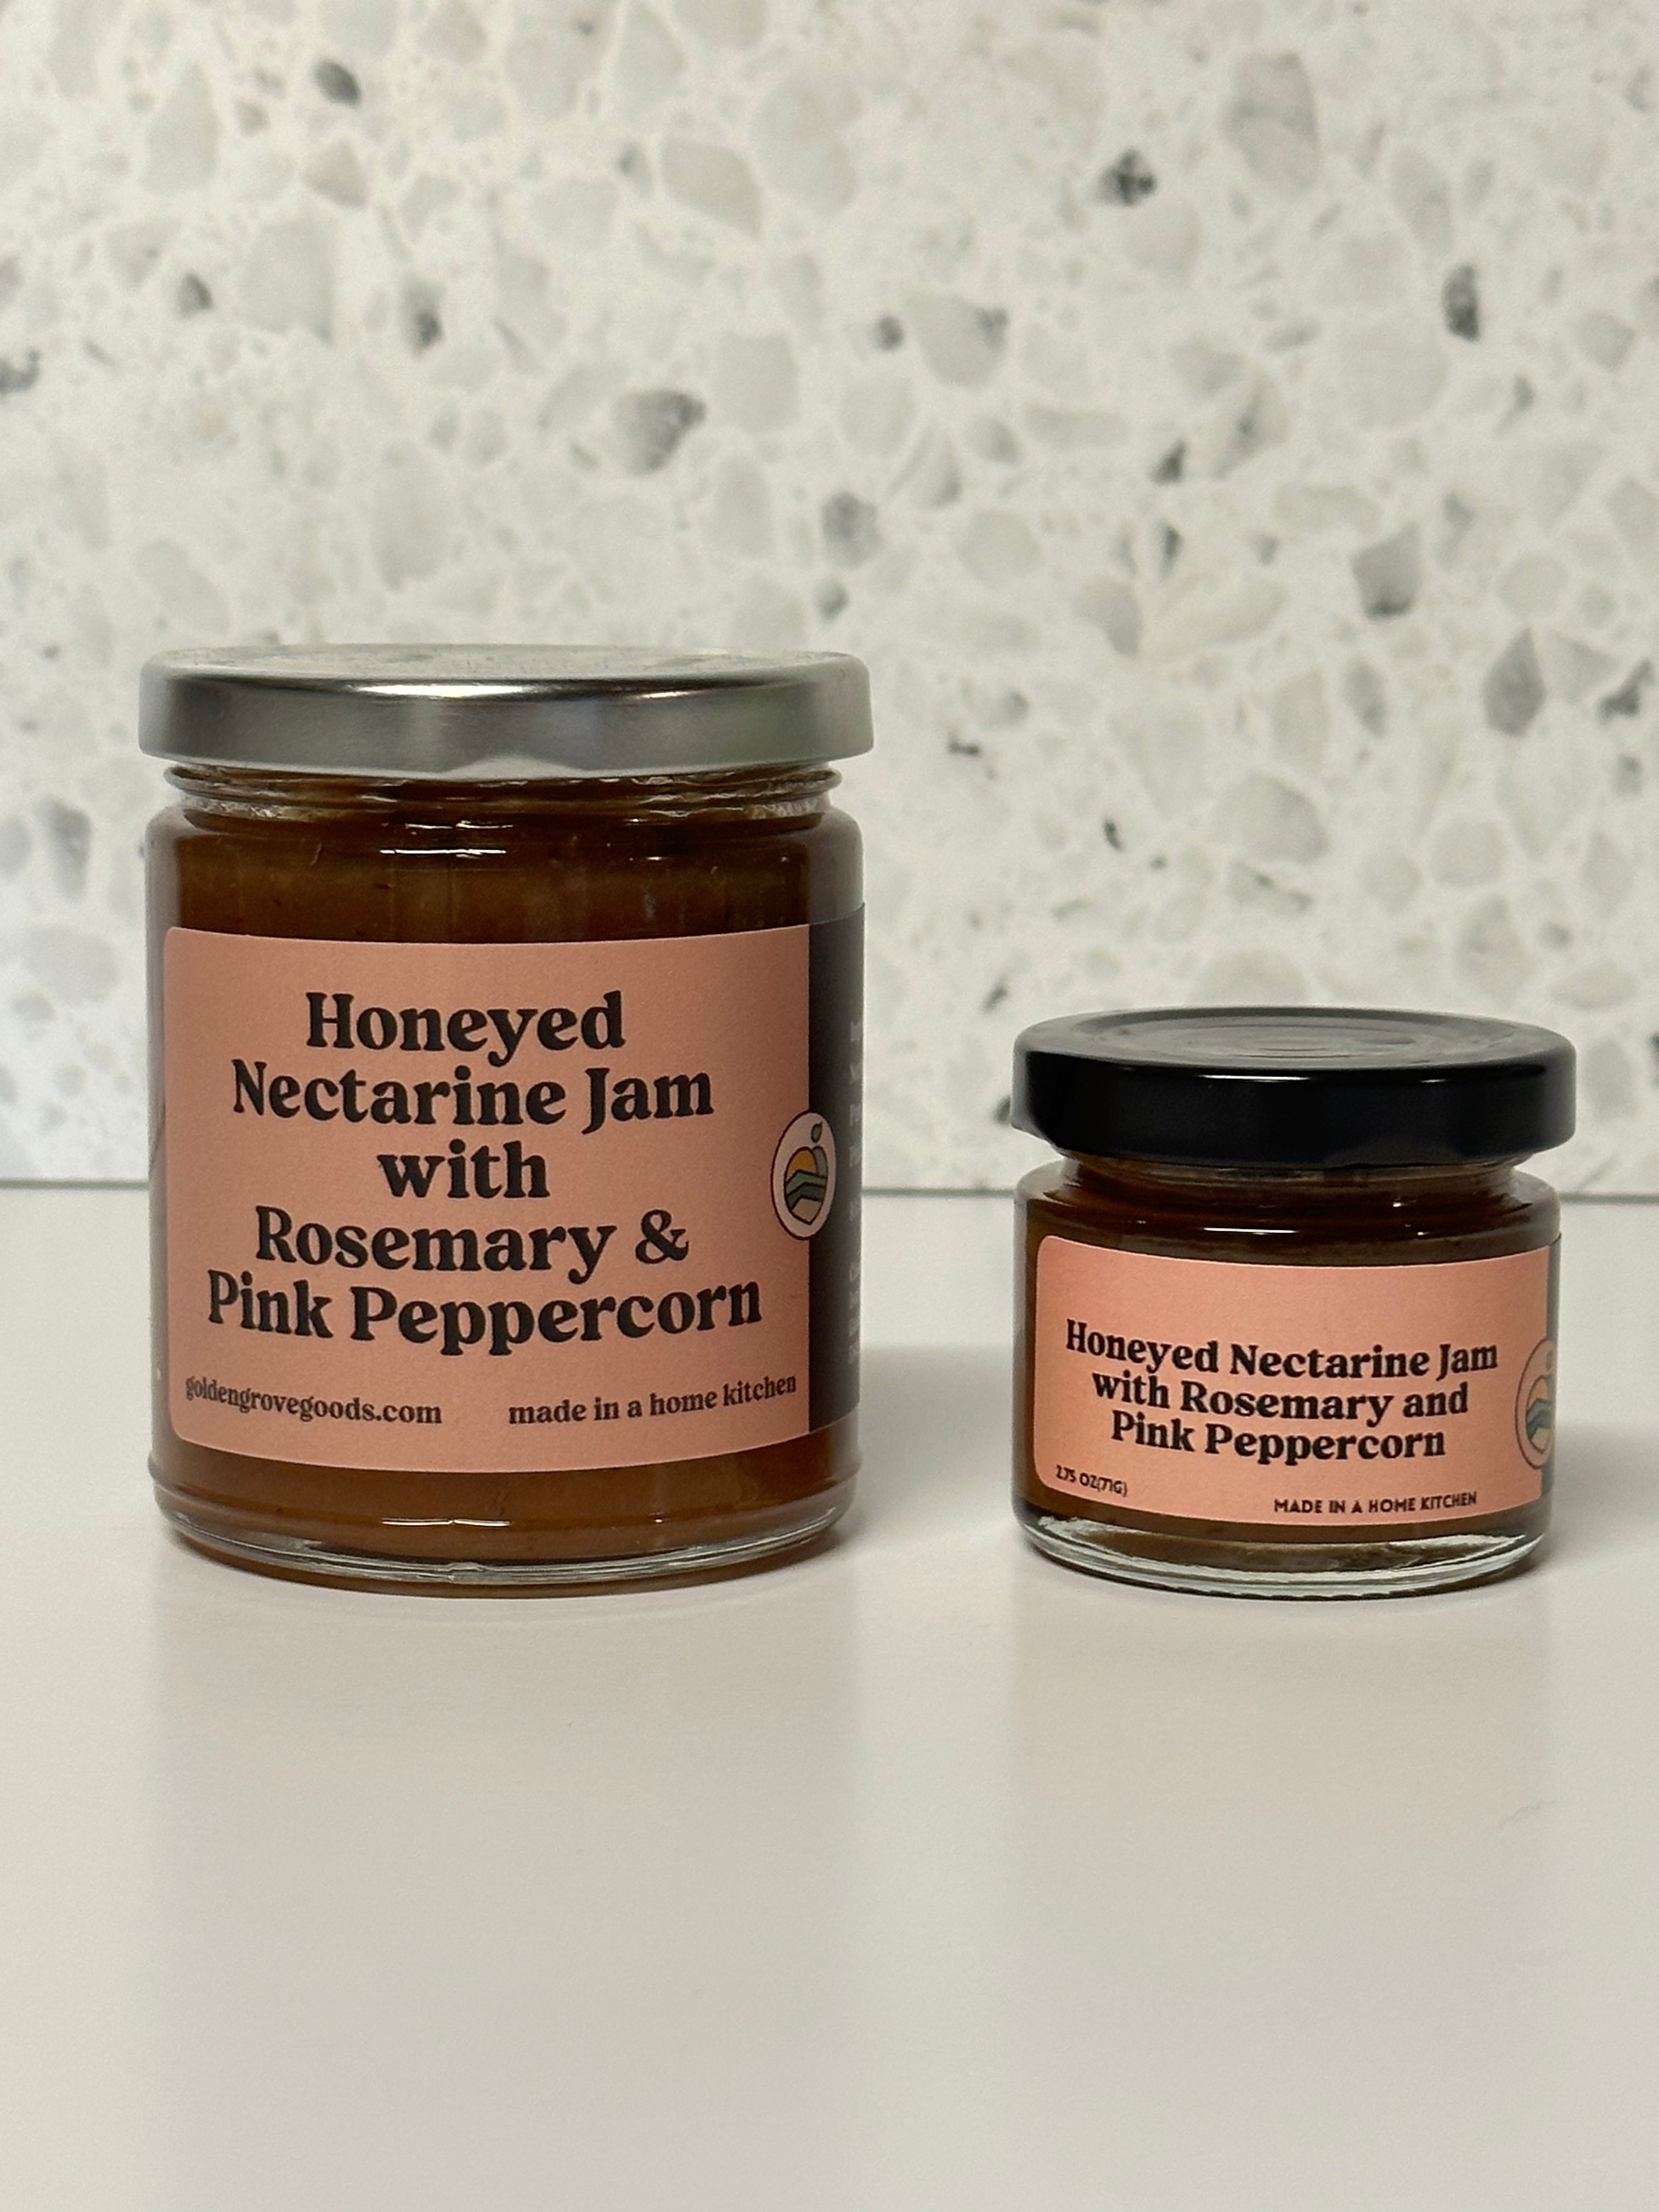 honeyed nectarine jam with rosemary and pink peppercorn